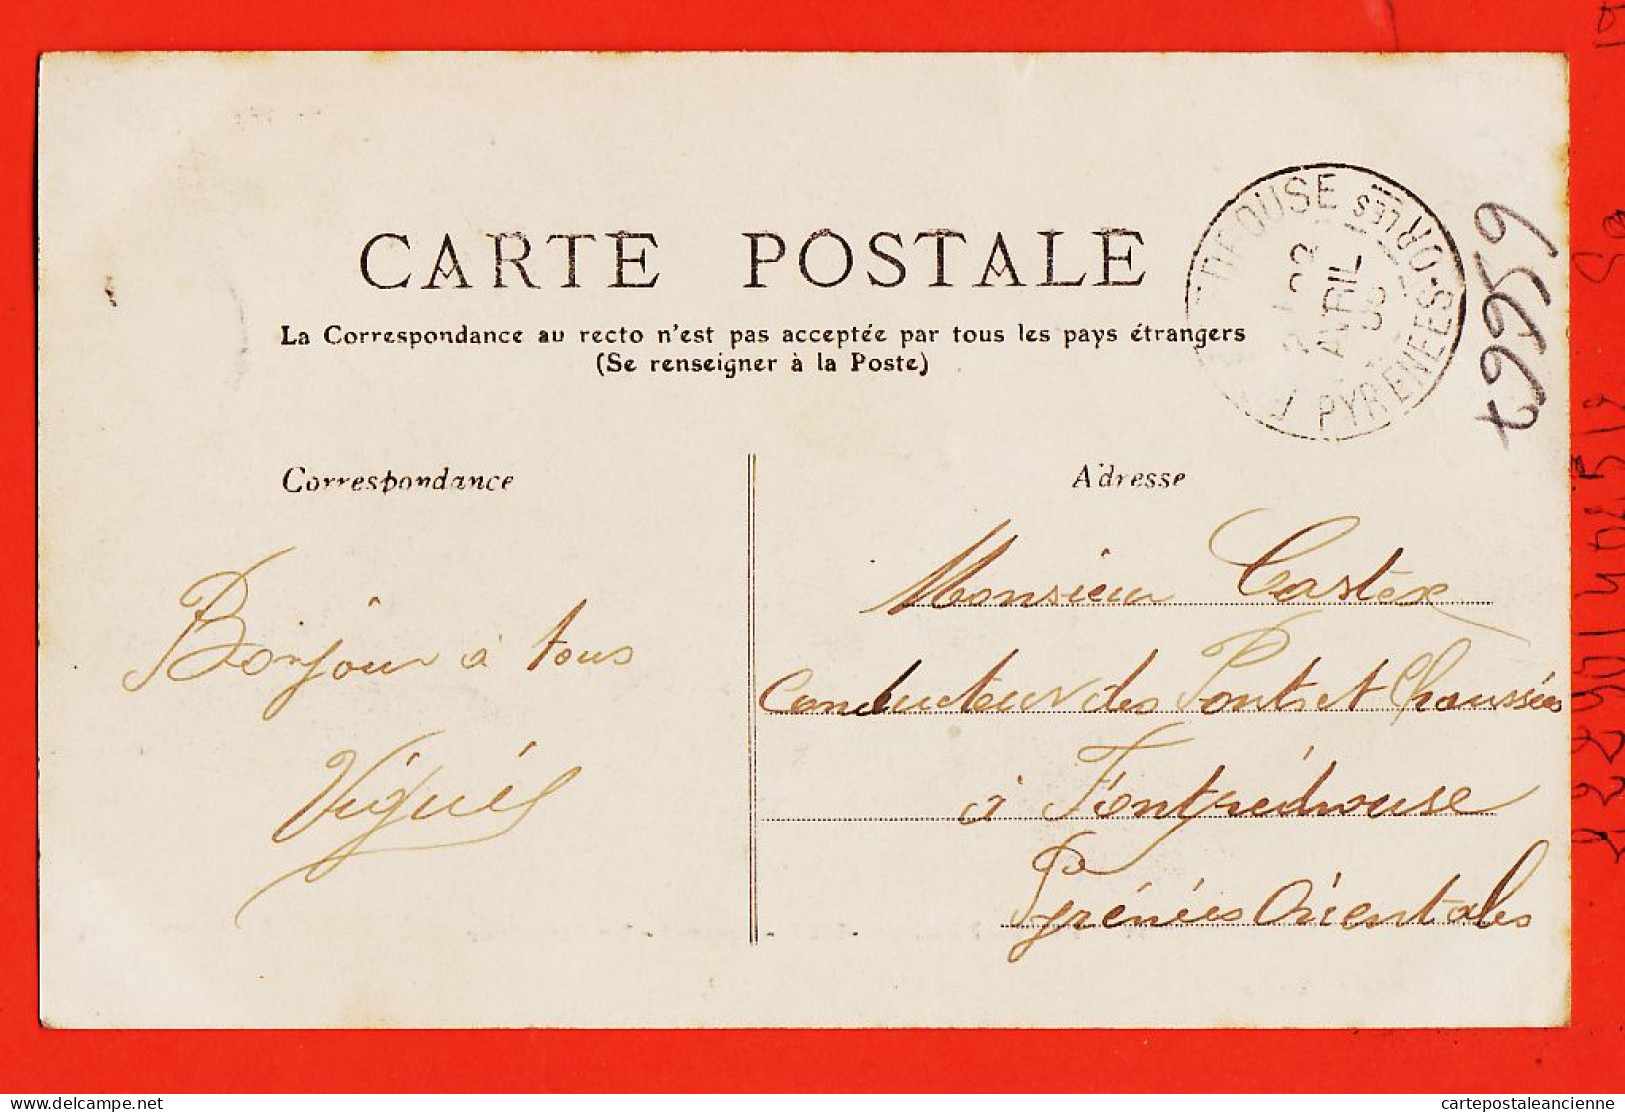 32934 / ⭐ ROCHEFORT-sur-MER 17-Charente M. (•◡•) Arsenal Torpilleur 1906 à CASTEX Fontpedrouse ◉ Galeries Parisiennes 22 - Rochefort